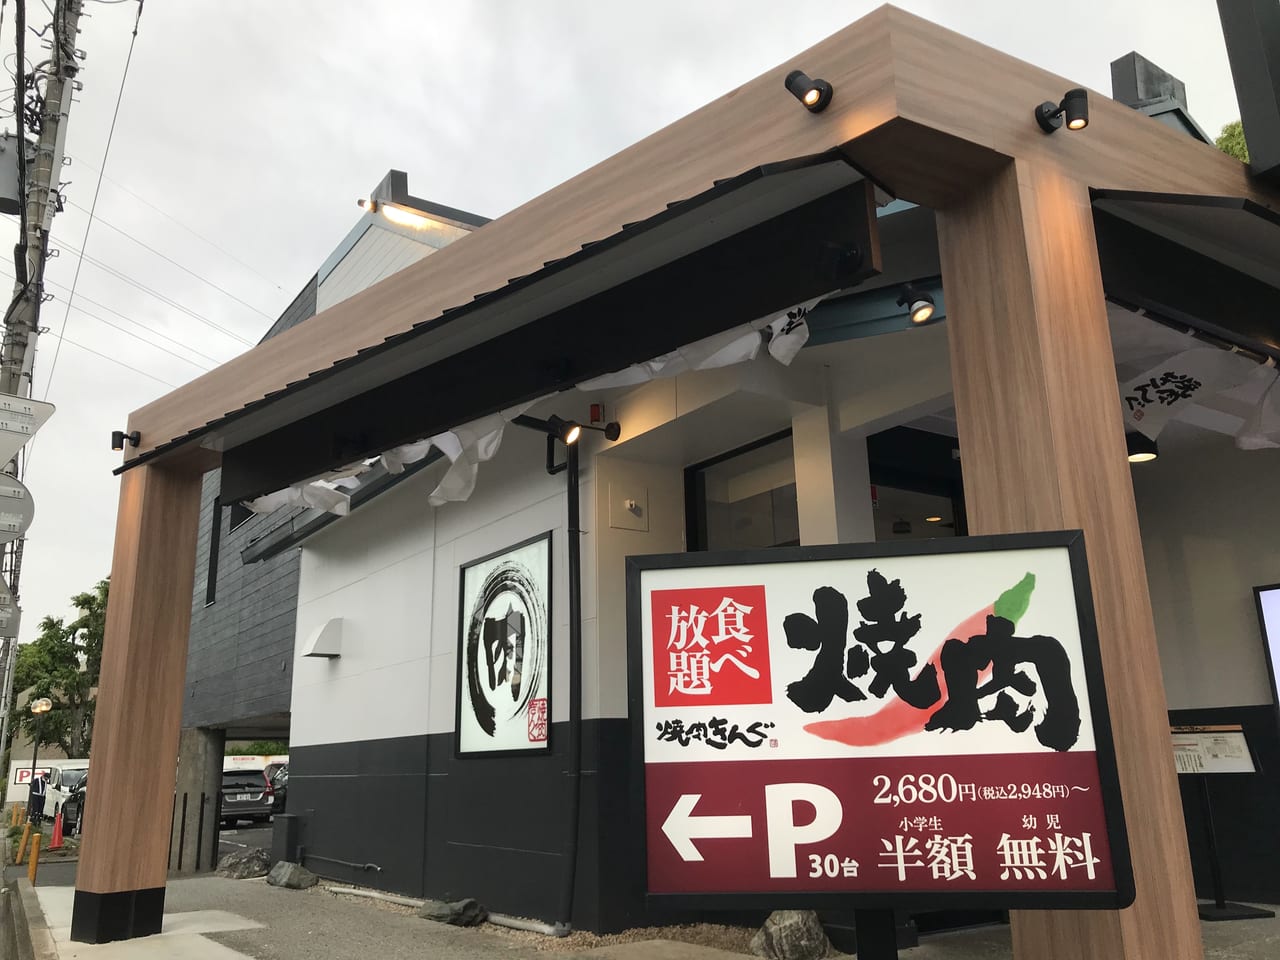 世田谷区焼肉きんぐ駒沢公園店は食べ放題4分19秒で客席全体の空気が入れ替わります。